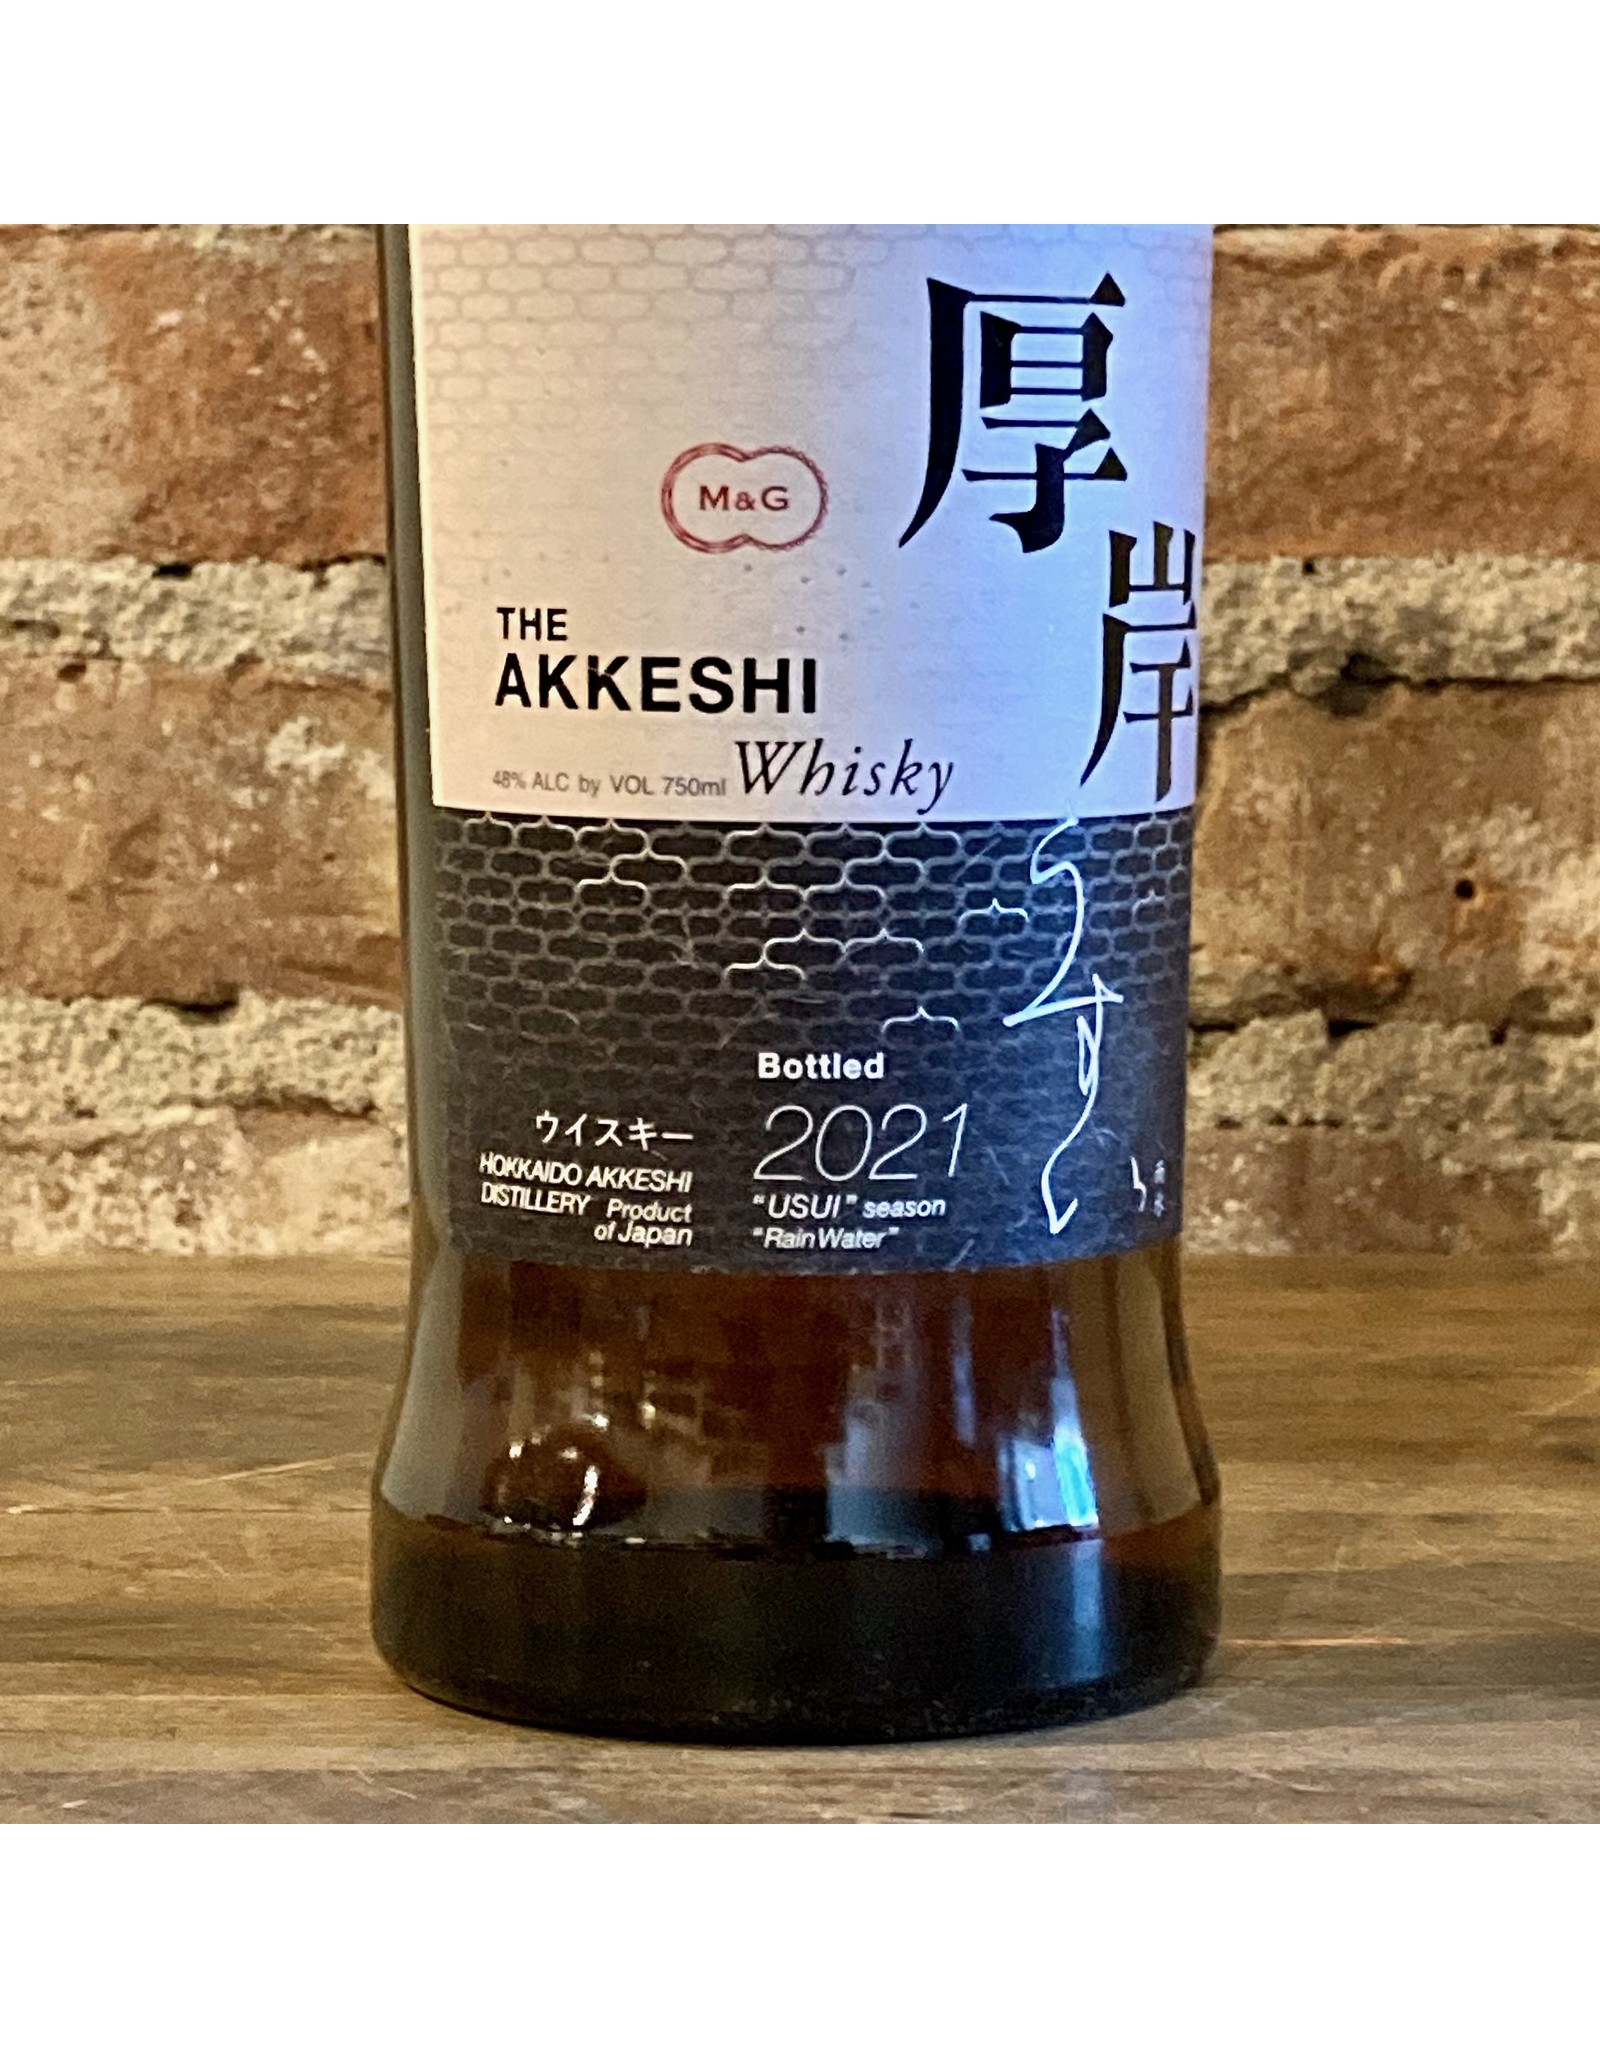 Skurnik Whisky, Usui Rainwater, Blended, The Akkeshi (2021 Release)